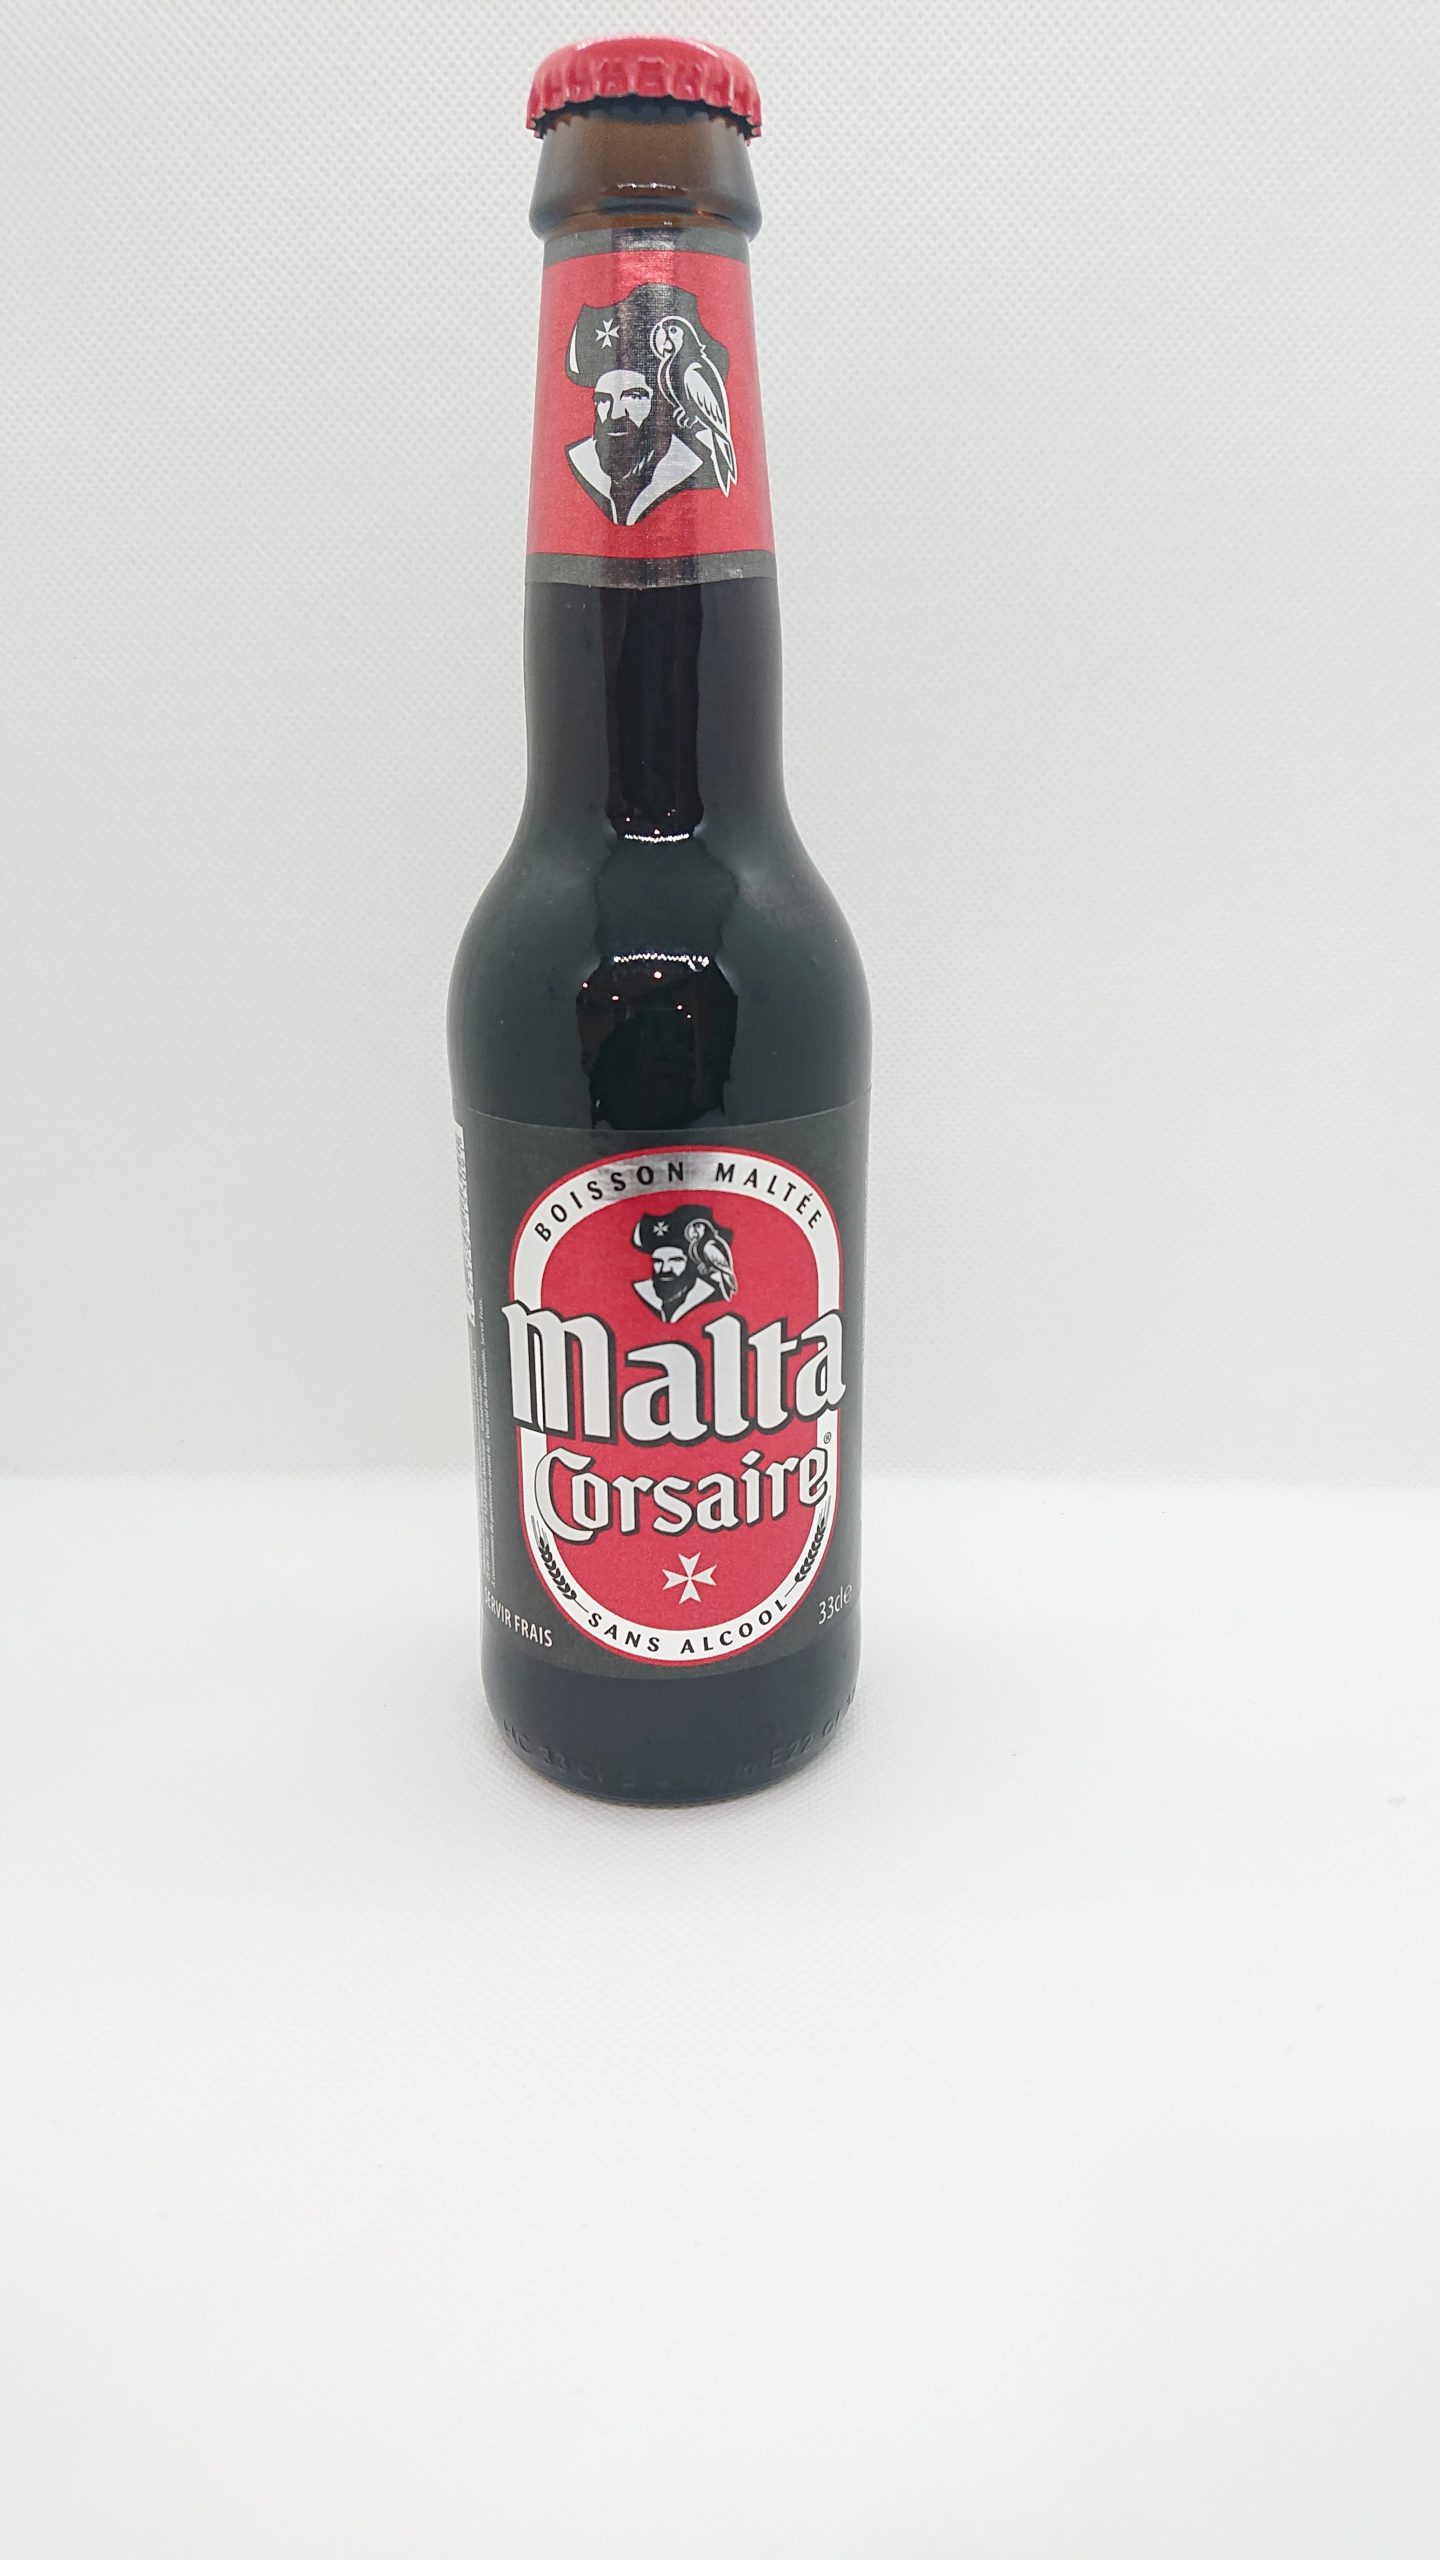 Bière maltée sans alcool 50 cl Malta Corsaire lot de 6